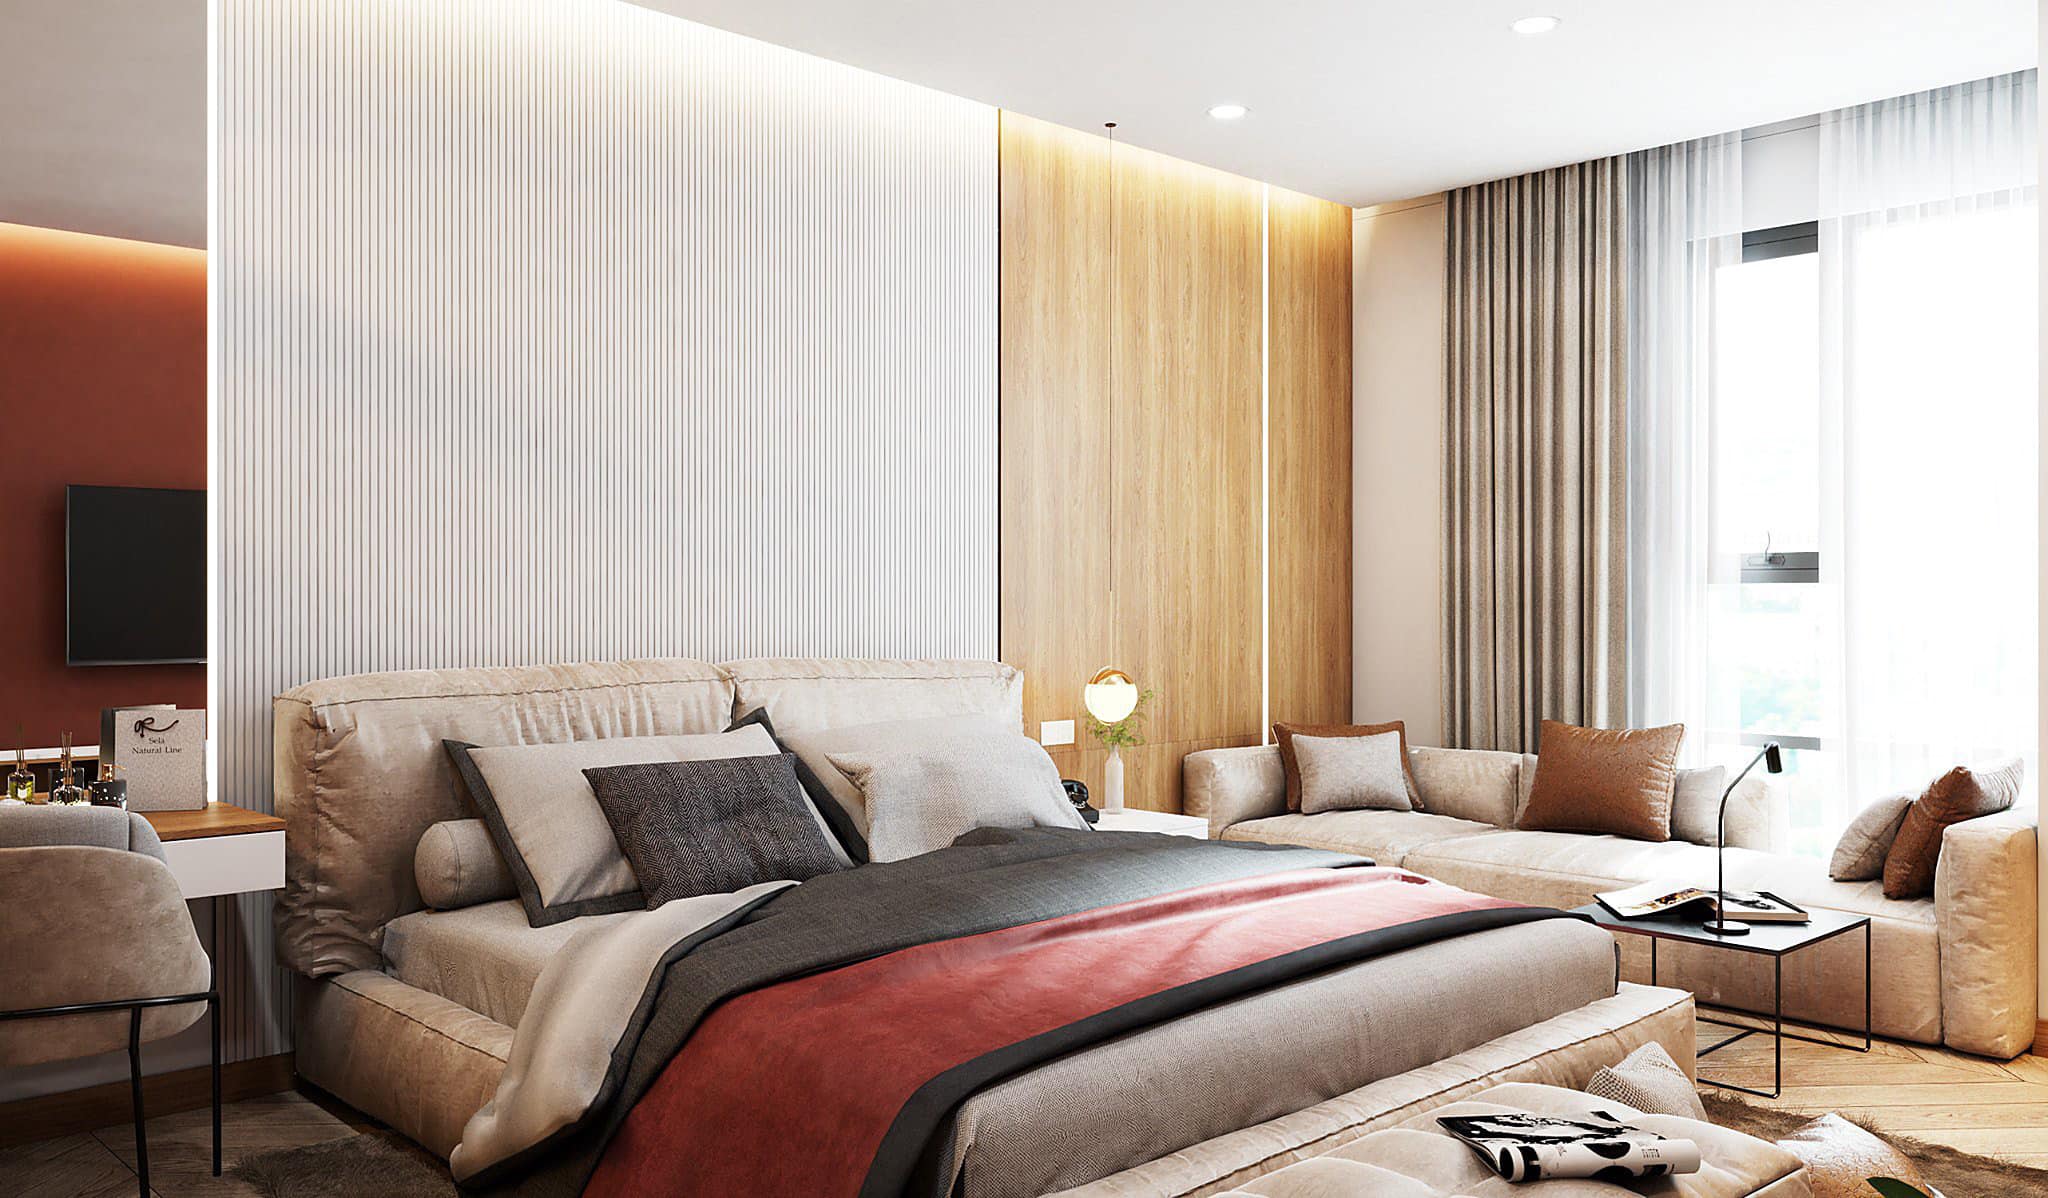 Tại Thiết kế & Xây dựng L.T có sẵn nhiều mẫu thiết kế phòng ngủ đẹp để bạn lựa chọn.